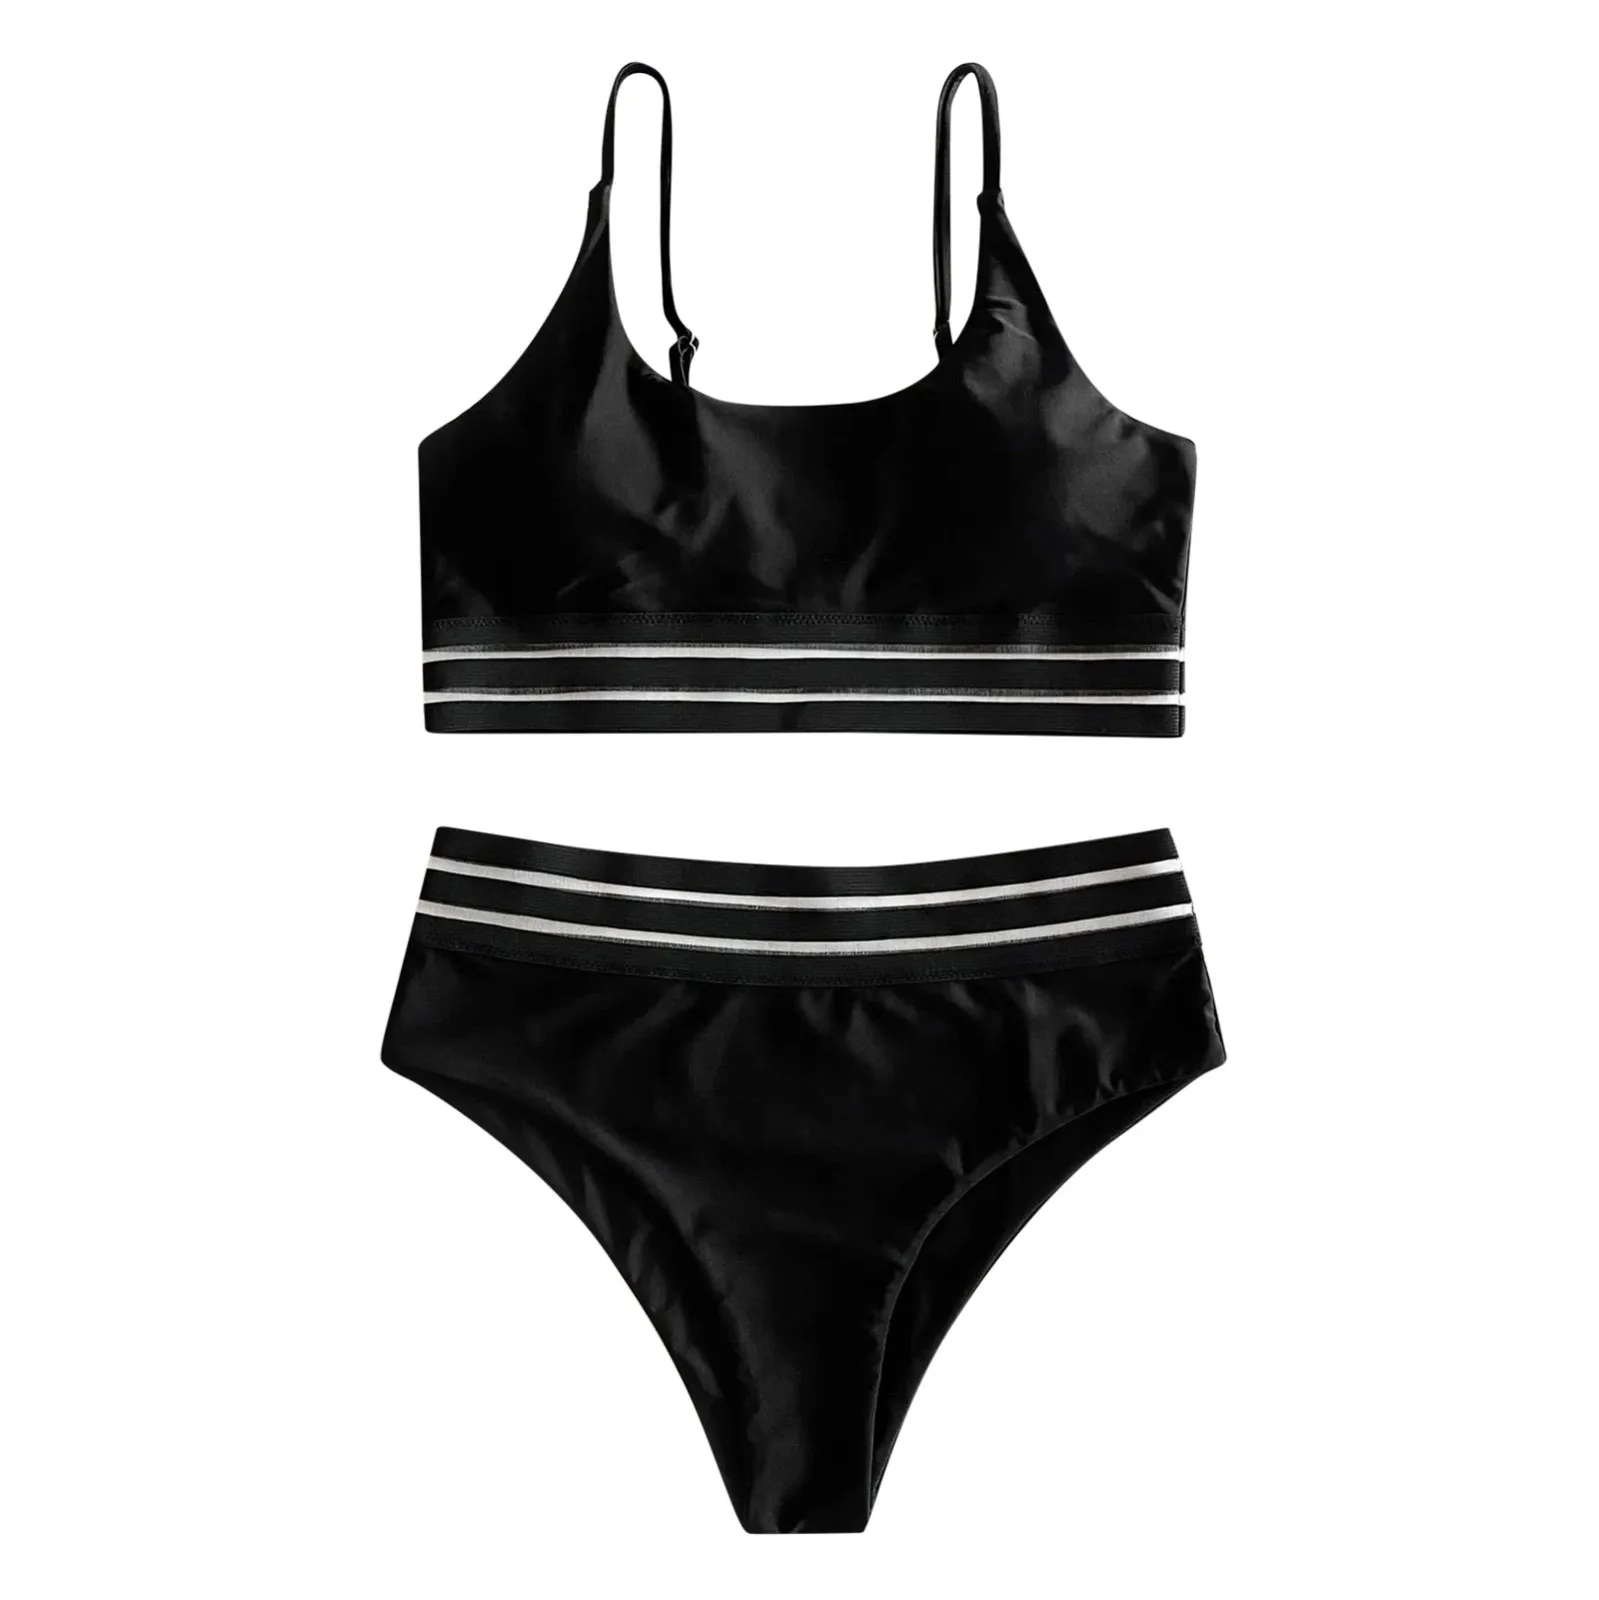 GRT Fitness H5557aaeb091f4499995f55e5ea35c6b1W Black Bikinis High Waist Bikini Hot Sale Mesh Lace Sexy Swimsuit Summer Female Swimwear Women Bathing Suit  